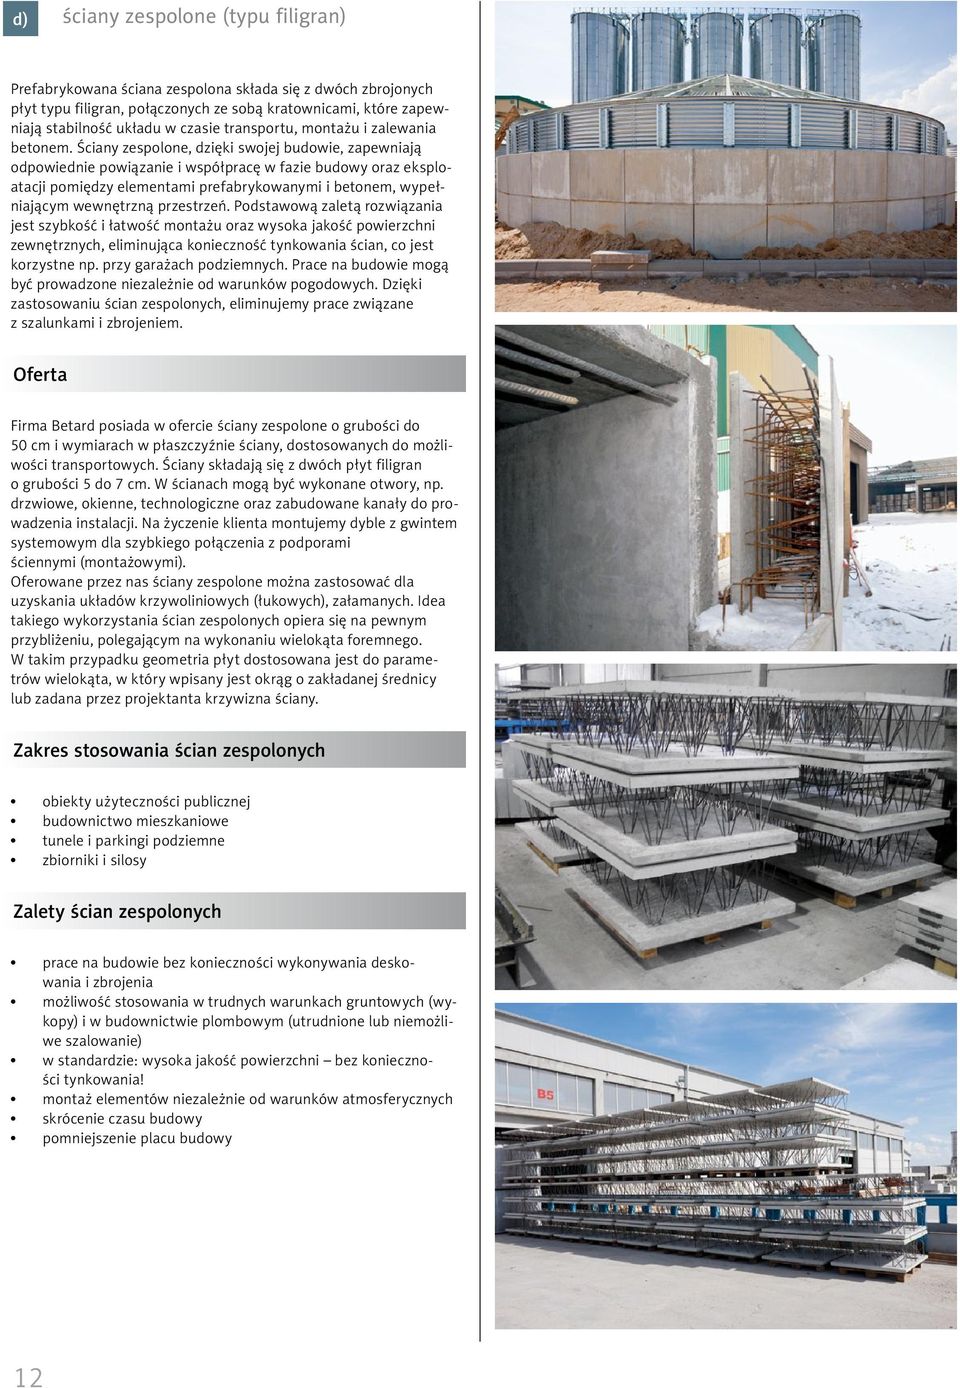 Ściany zespolone, dzięki swojej budowie, zapewniają odpowiednie powiązanie i współpracę w fazie budowy oraz eksploatacji pomiędzy elementami prefabrykowanymi i betonem, wypełniającym wewnętrzną